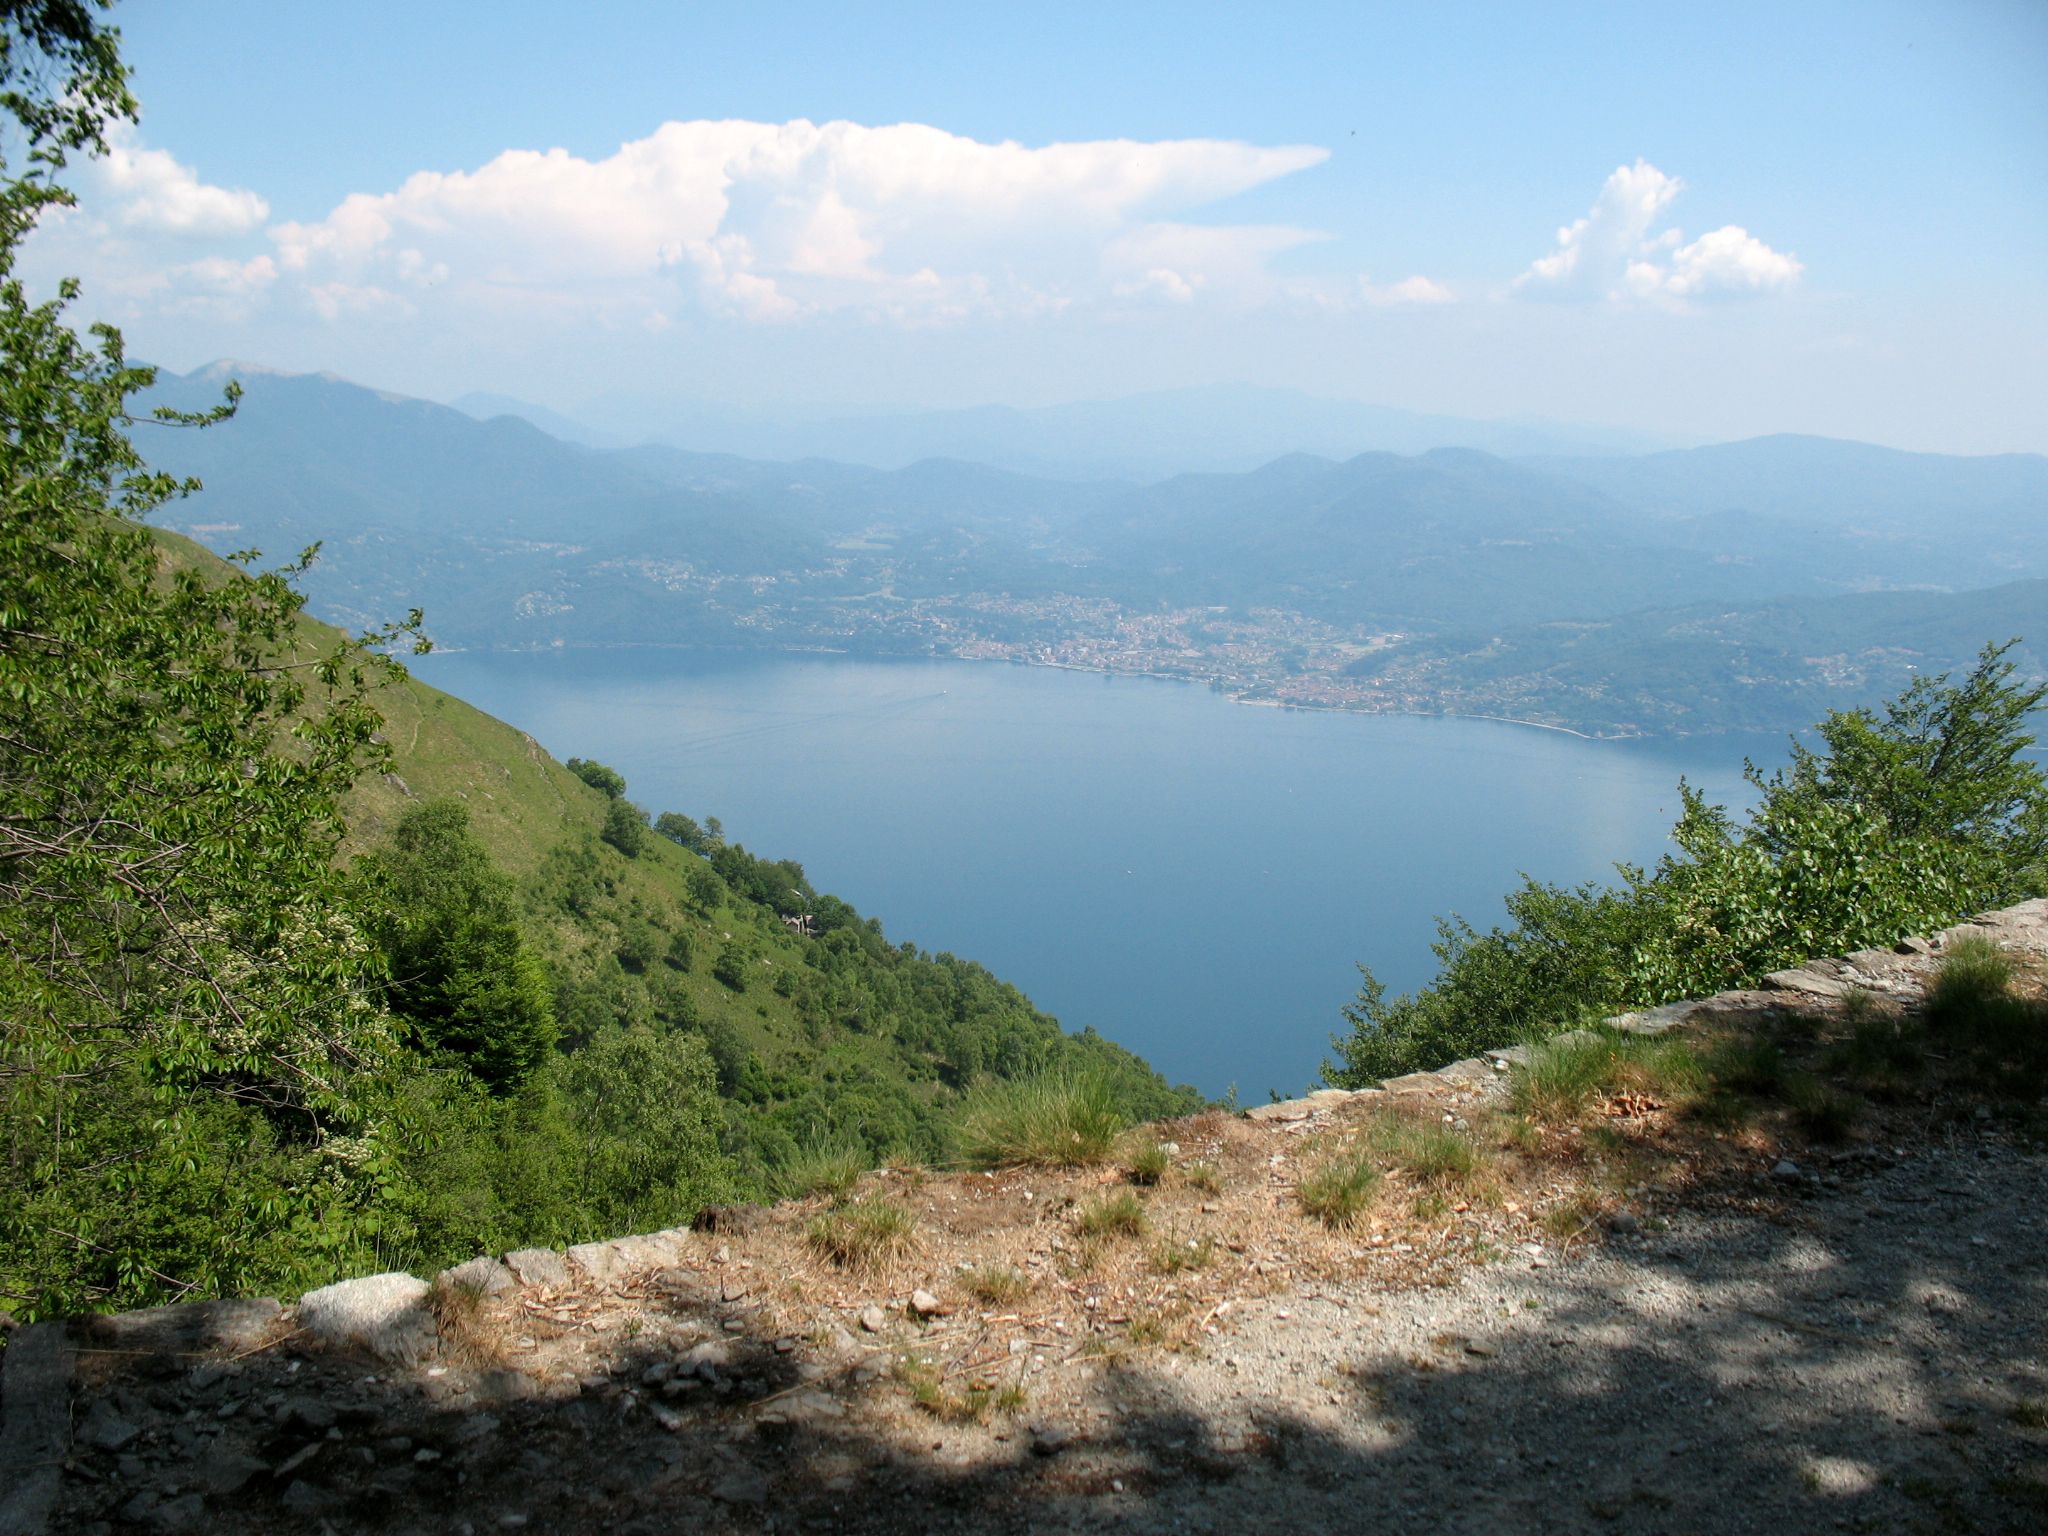 Scorcio del Lago Maggiore in direzione del Monte Morissolo